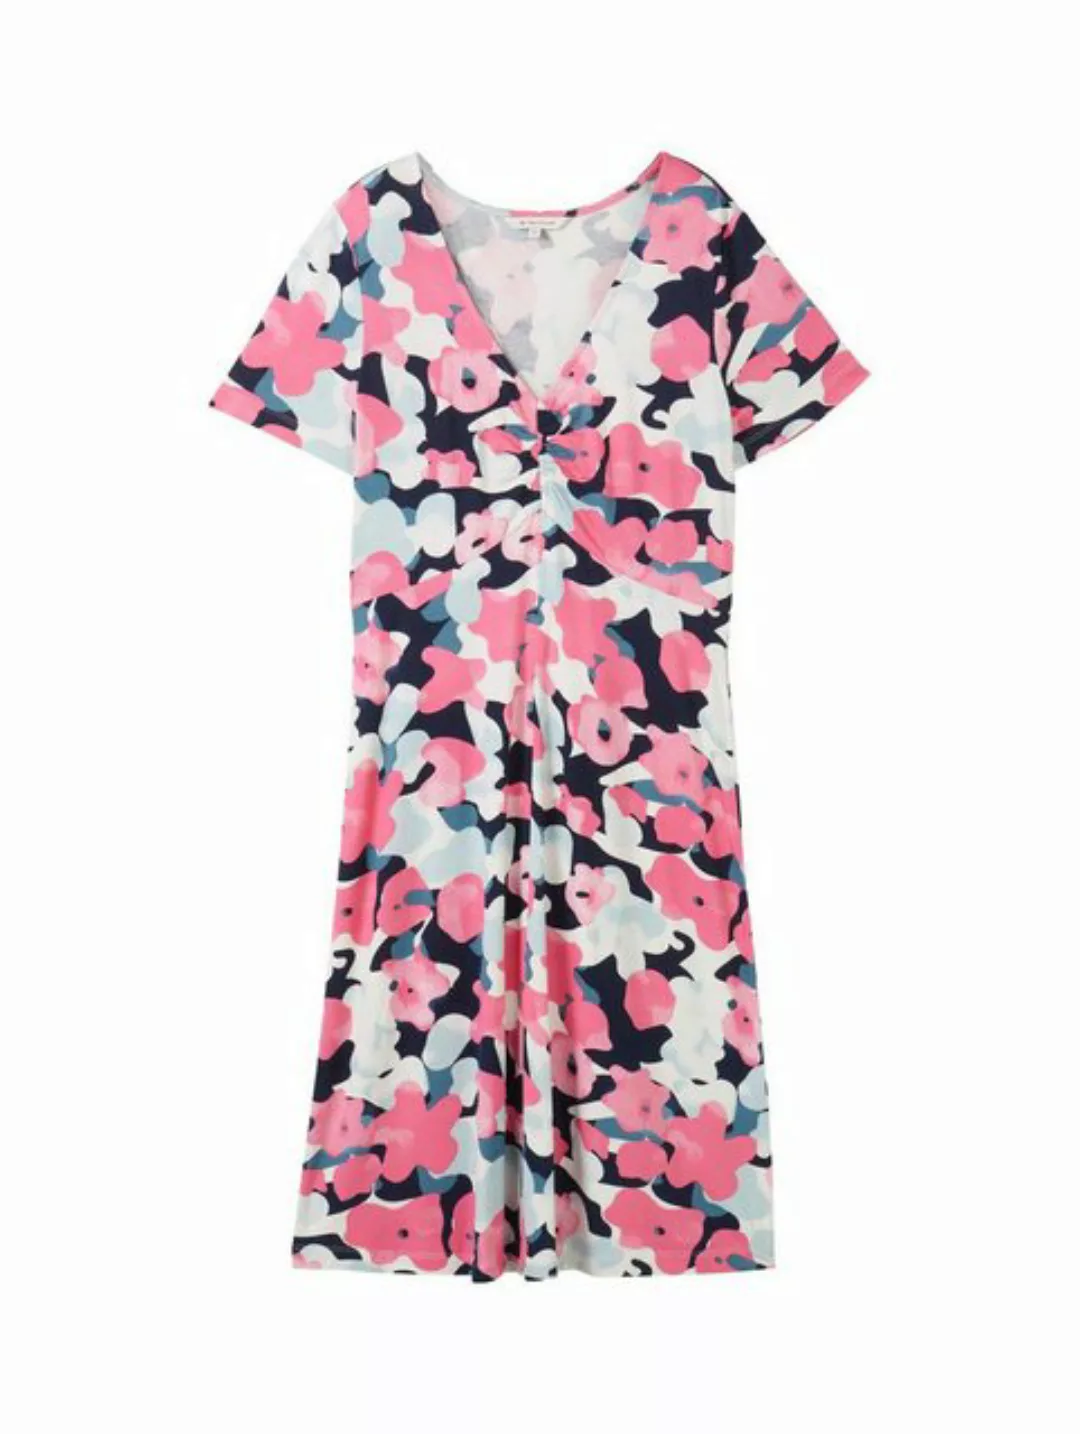 TOM TAILOR Sommerkleid easy jersey dress, pink colorful floral design günstig online kaufen